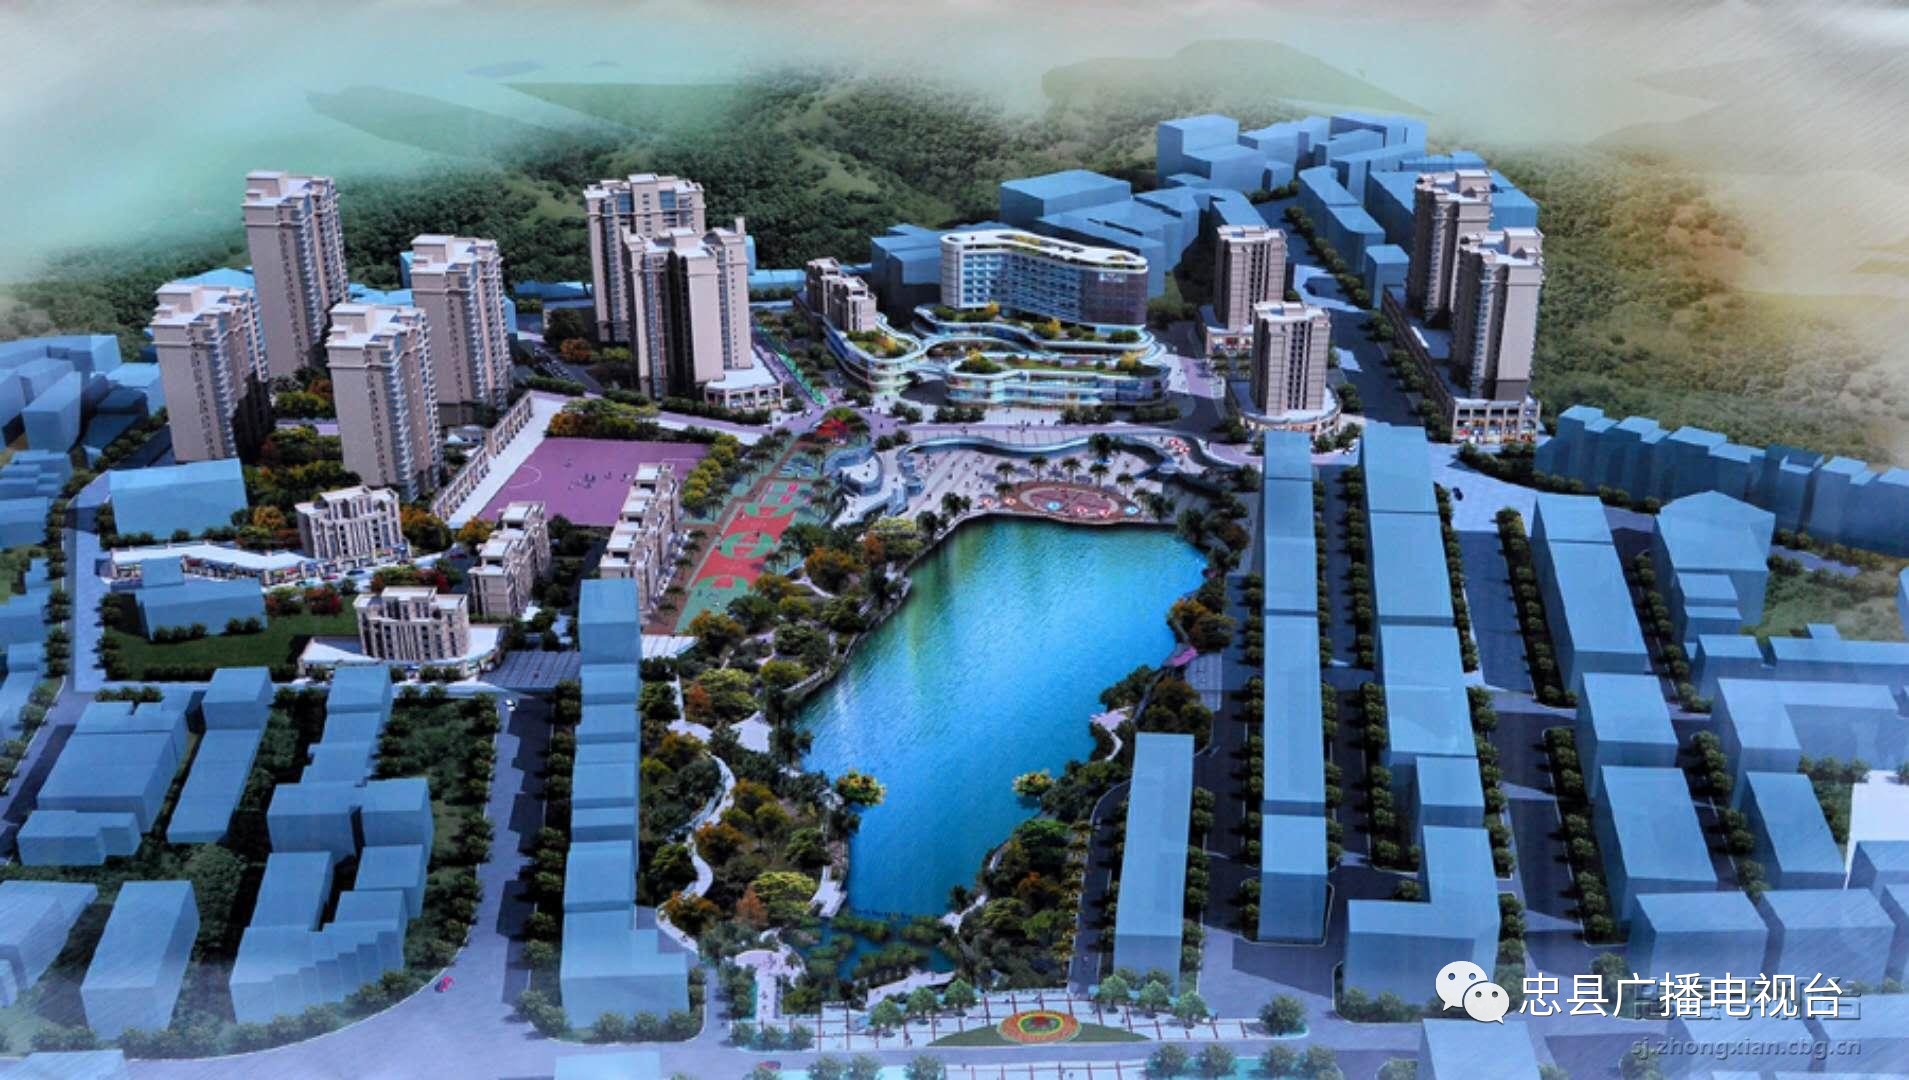 【一兴四美 七彩大地】忠县建成一大型乡镇公园:拔山蓝湖公园图片